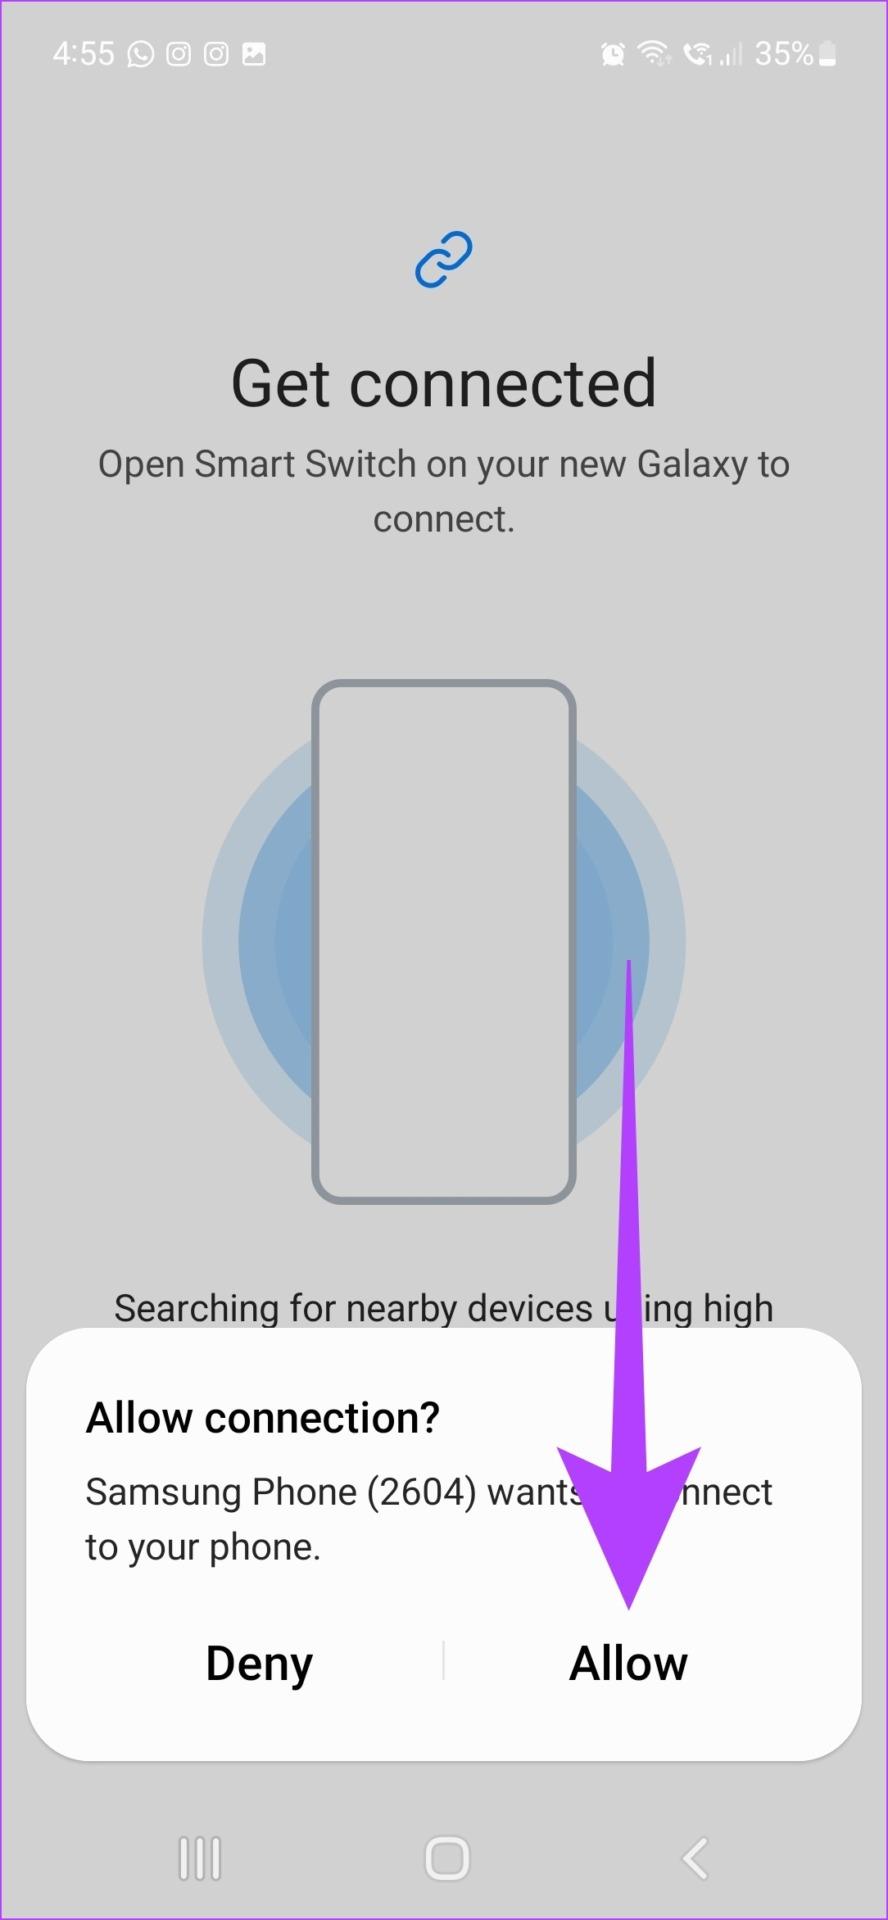 Comment utiliser Samsung Smart Switch pour sauvegarder et transférer des données sur les téléphones Galaxy